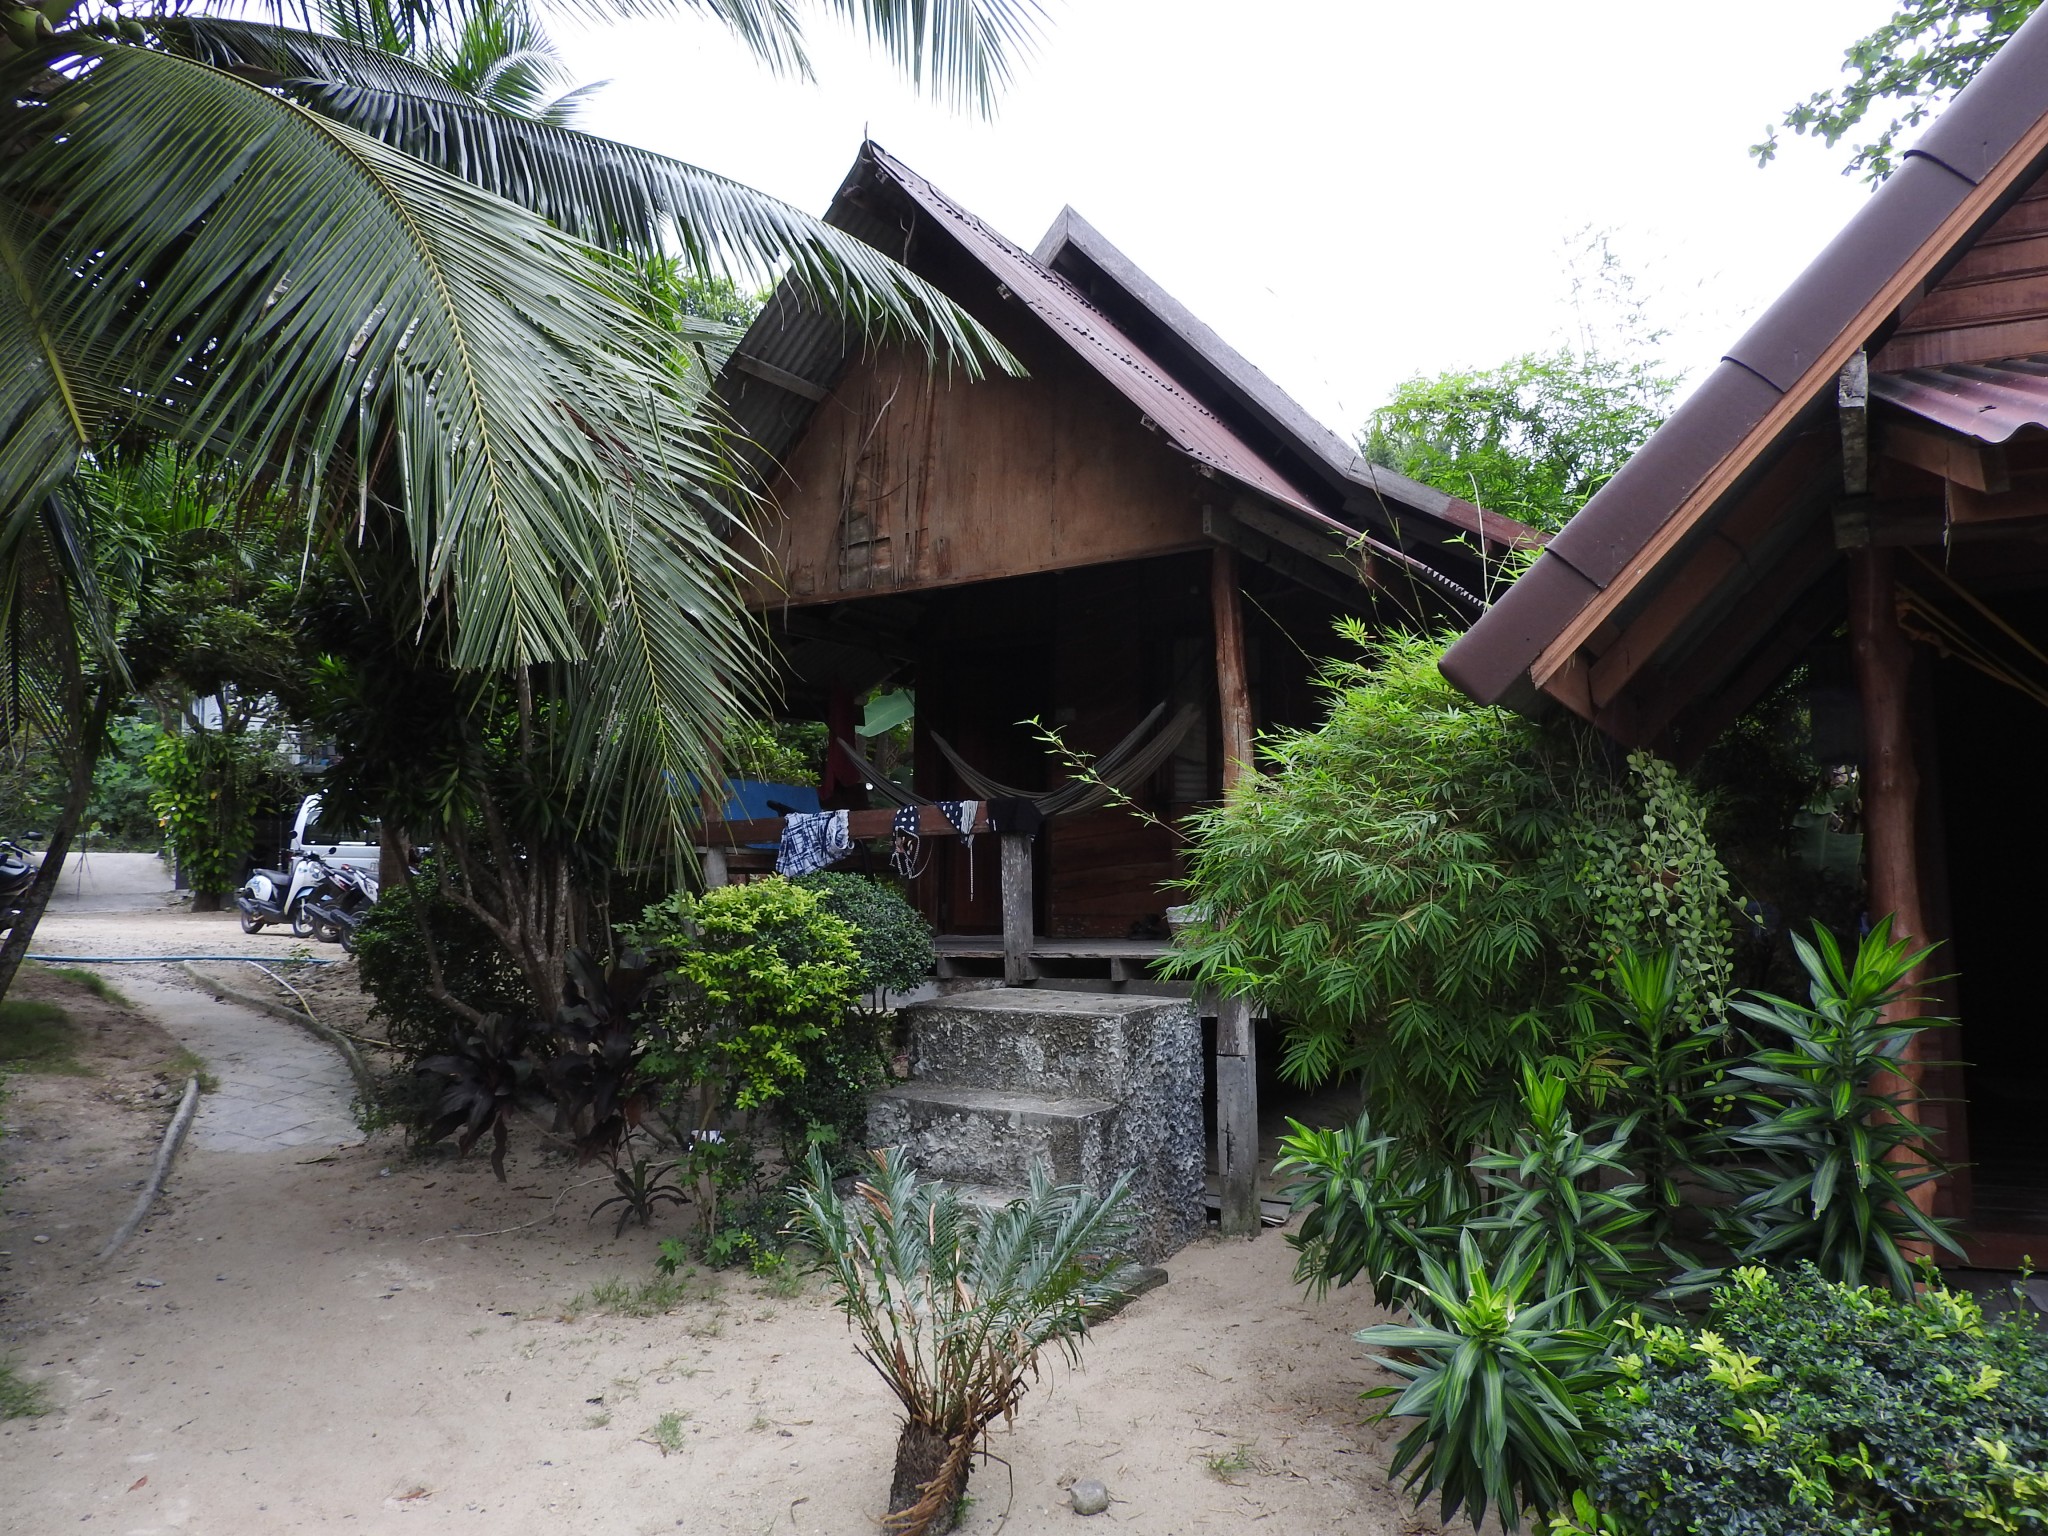 Ons net wat duurder hutje op het strand in Koh Phagnan